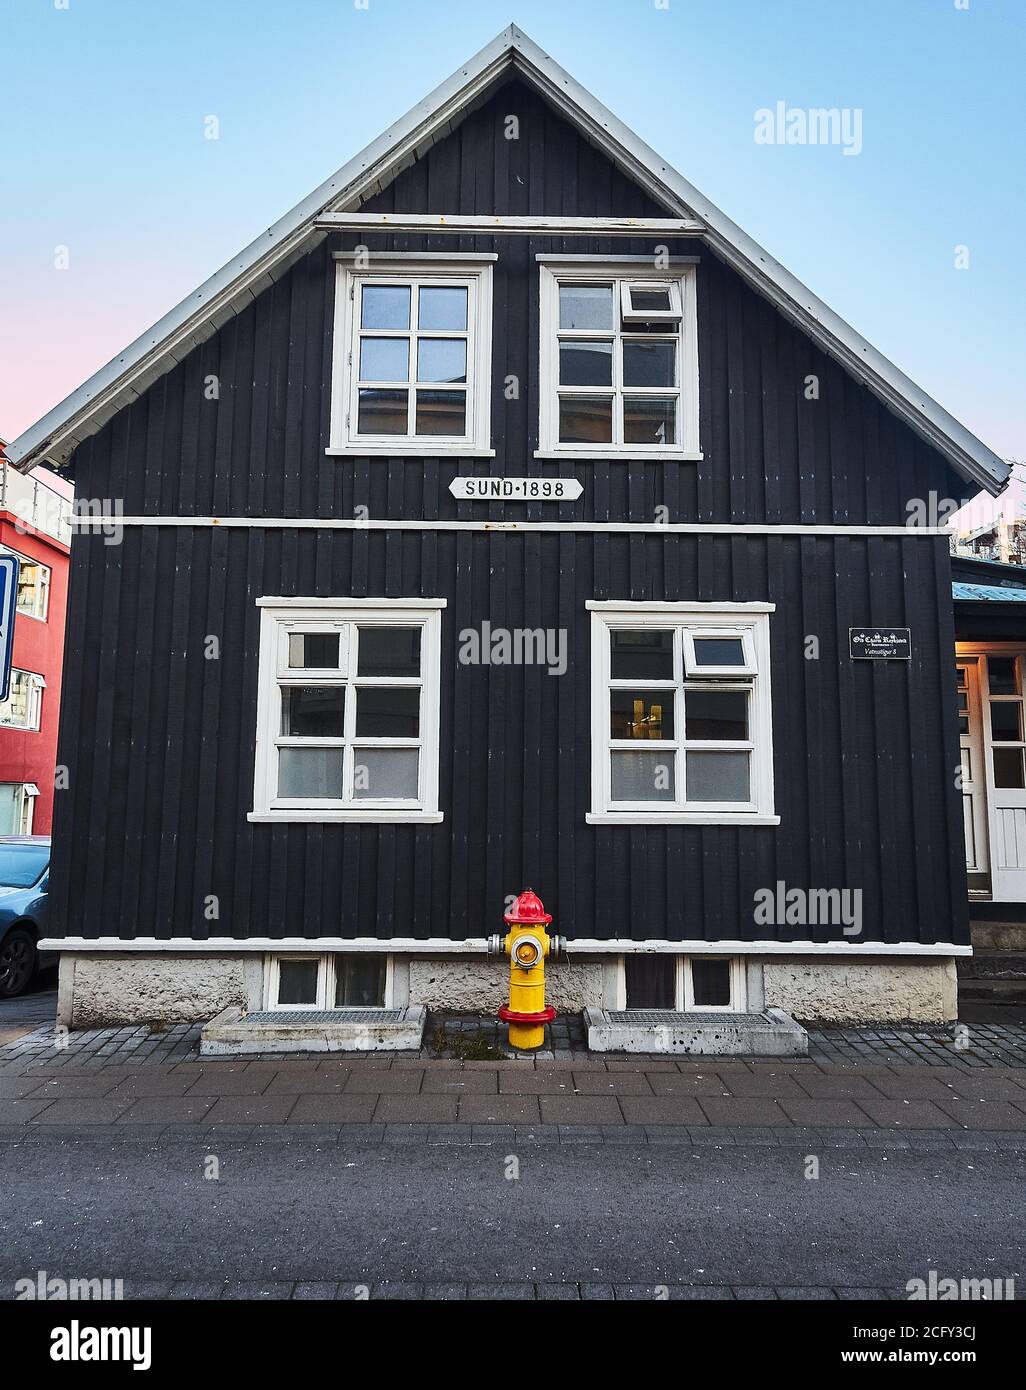 Maisons typiques dans le centre de Reykjavik, Islande Banque D'Images